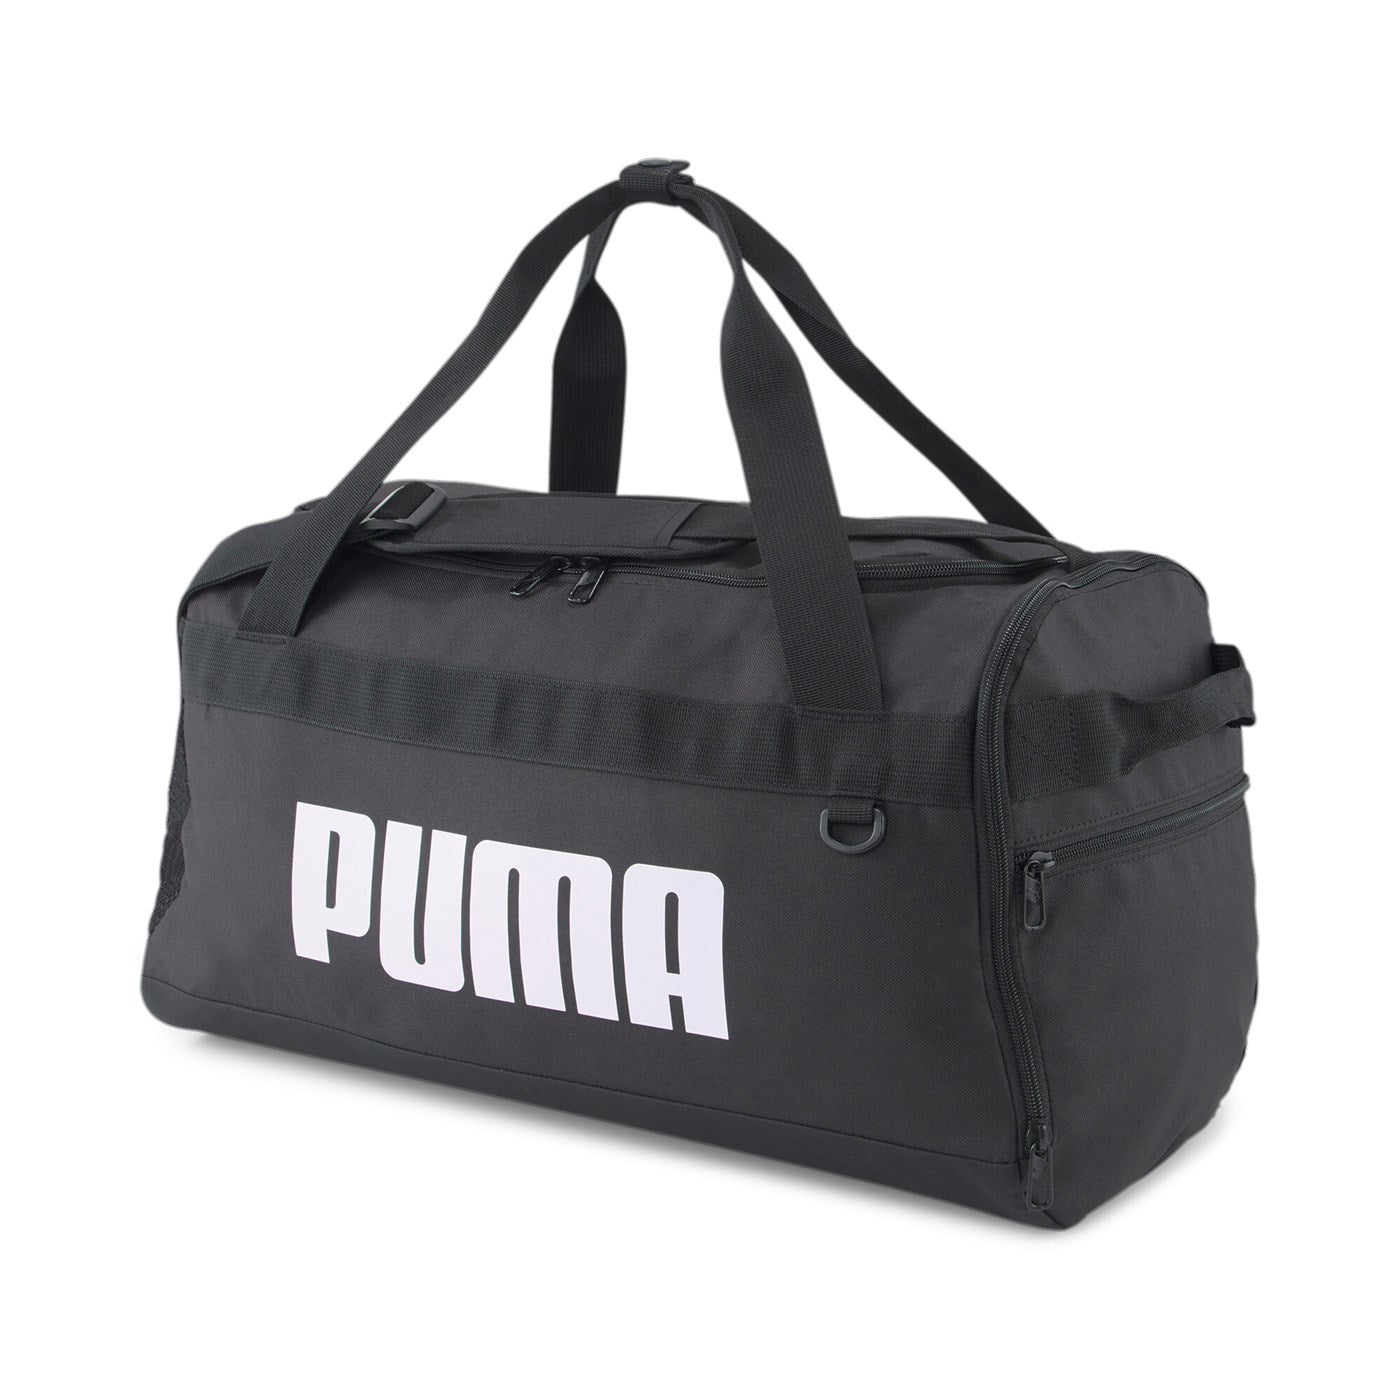 Puma borsone sportivo Challenger Duffel 079530 01 nero